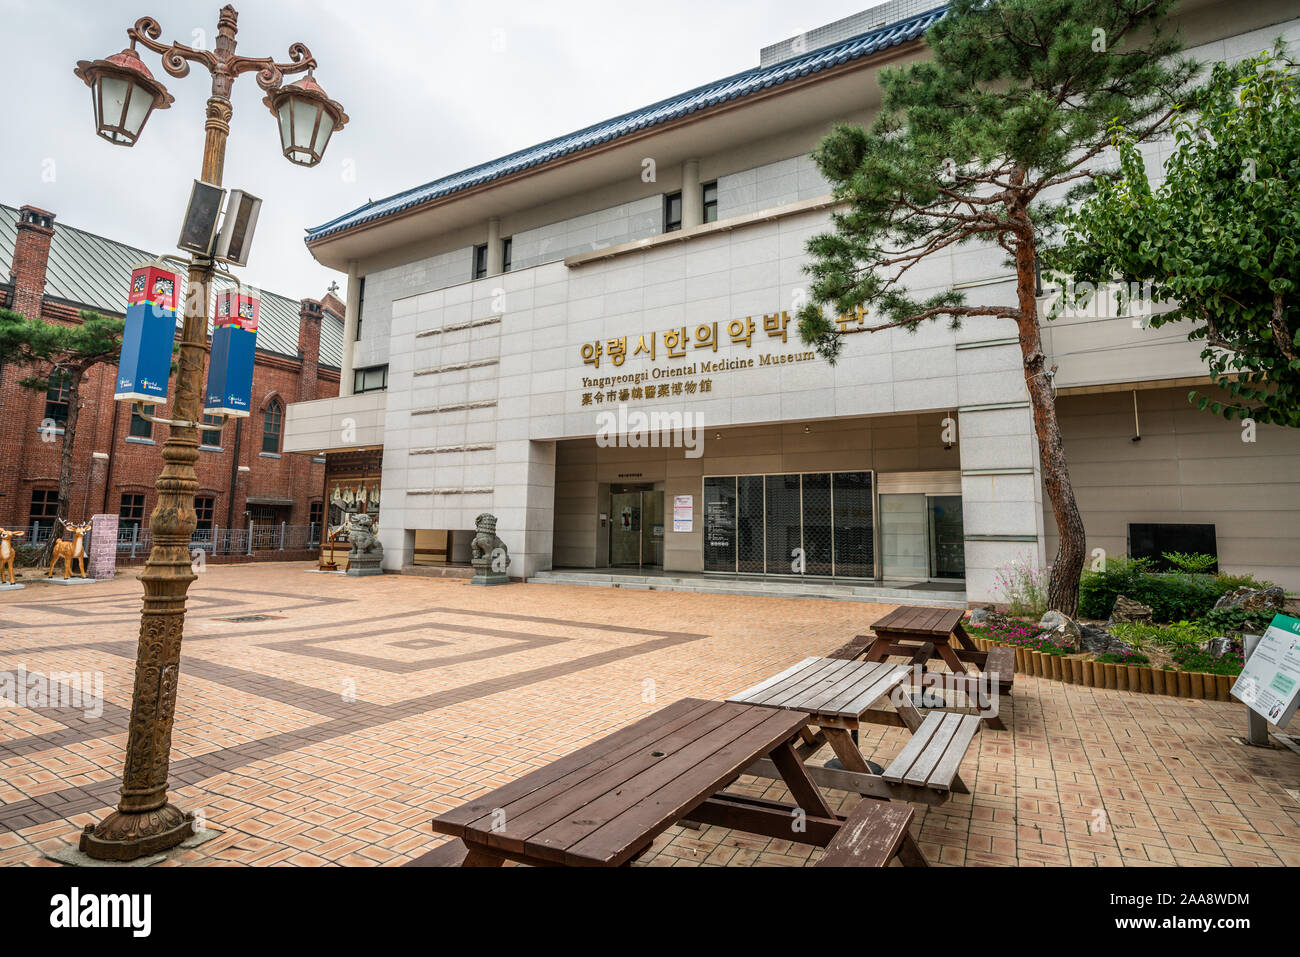 Daegu Corée , 1 octobre 2019 : Daegu Yangnyeongsi musée médecine orientale vue avant, à Daegu en Corée du Sud Banque D'Images